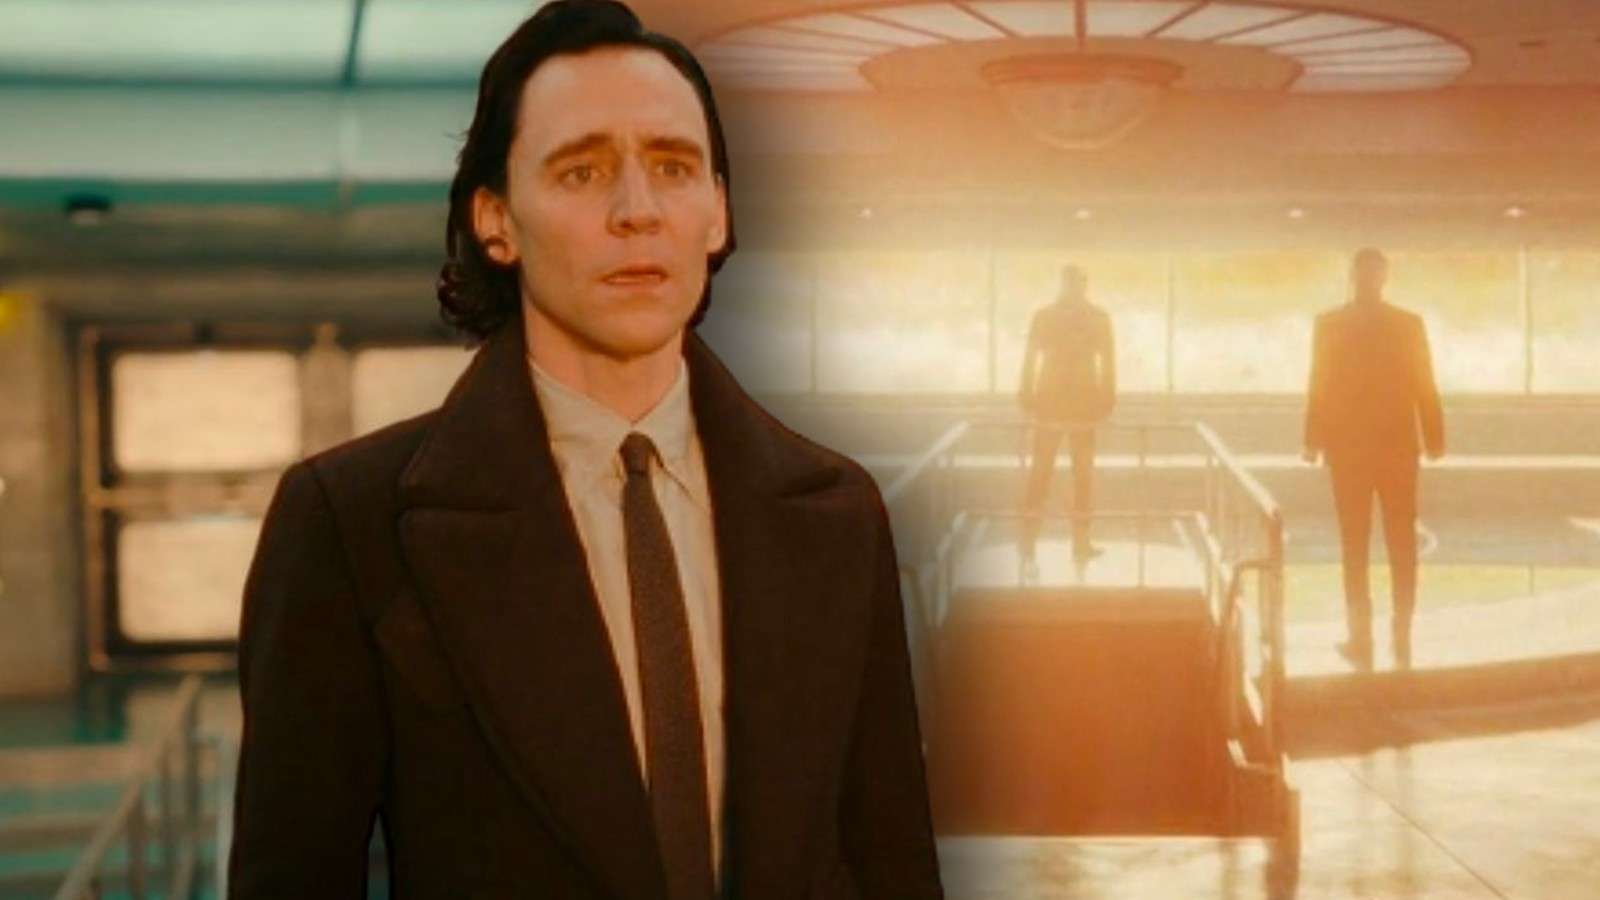 Stills from the ending of Loki Season 2 Episode 4